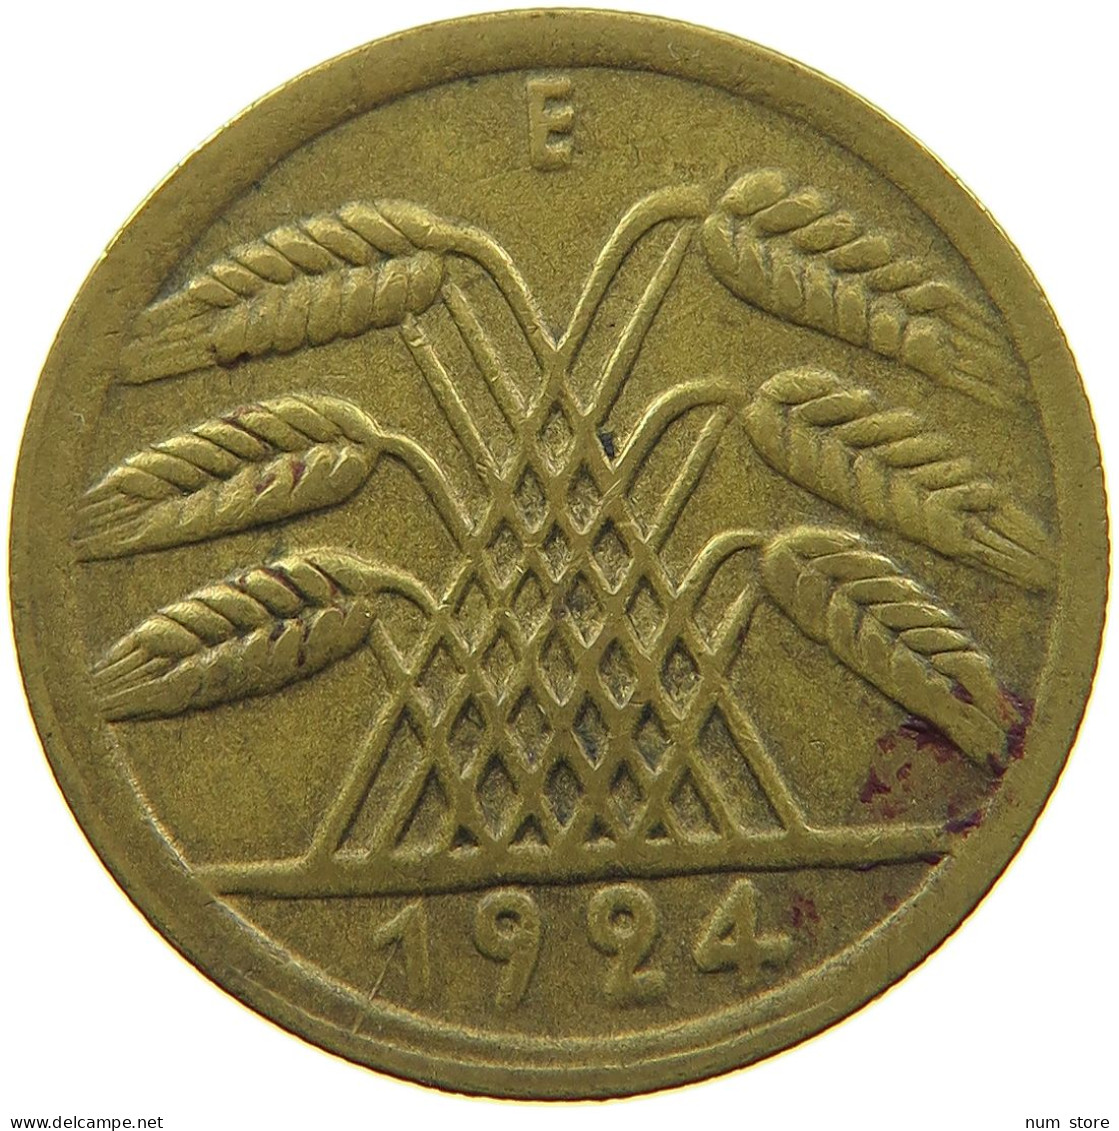 WEIMARER REPUBLIK 50 RENTENPFENNIG 1924 E  DEZENTRIERT REVERSE #t029 0223 - 50 Rentenpfennig & 50 Reichspfennig